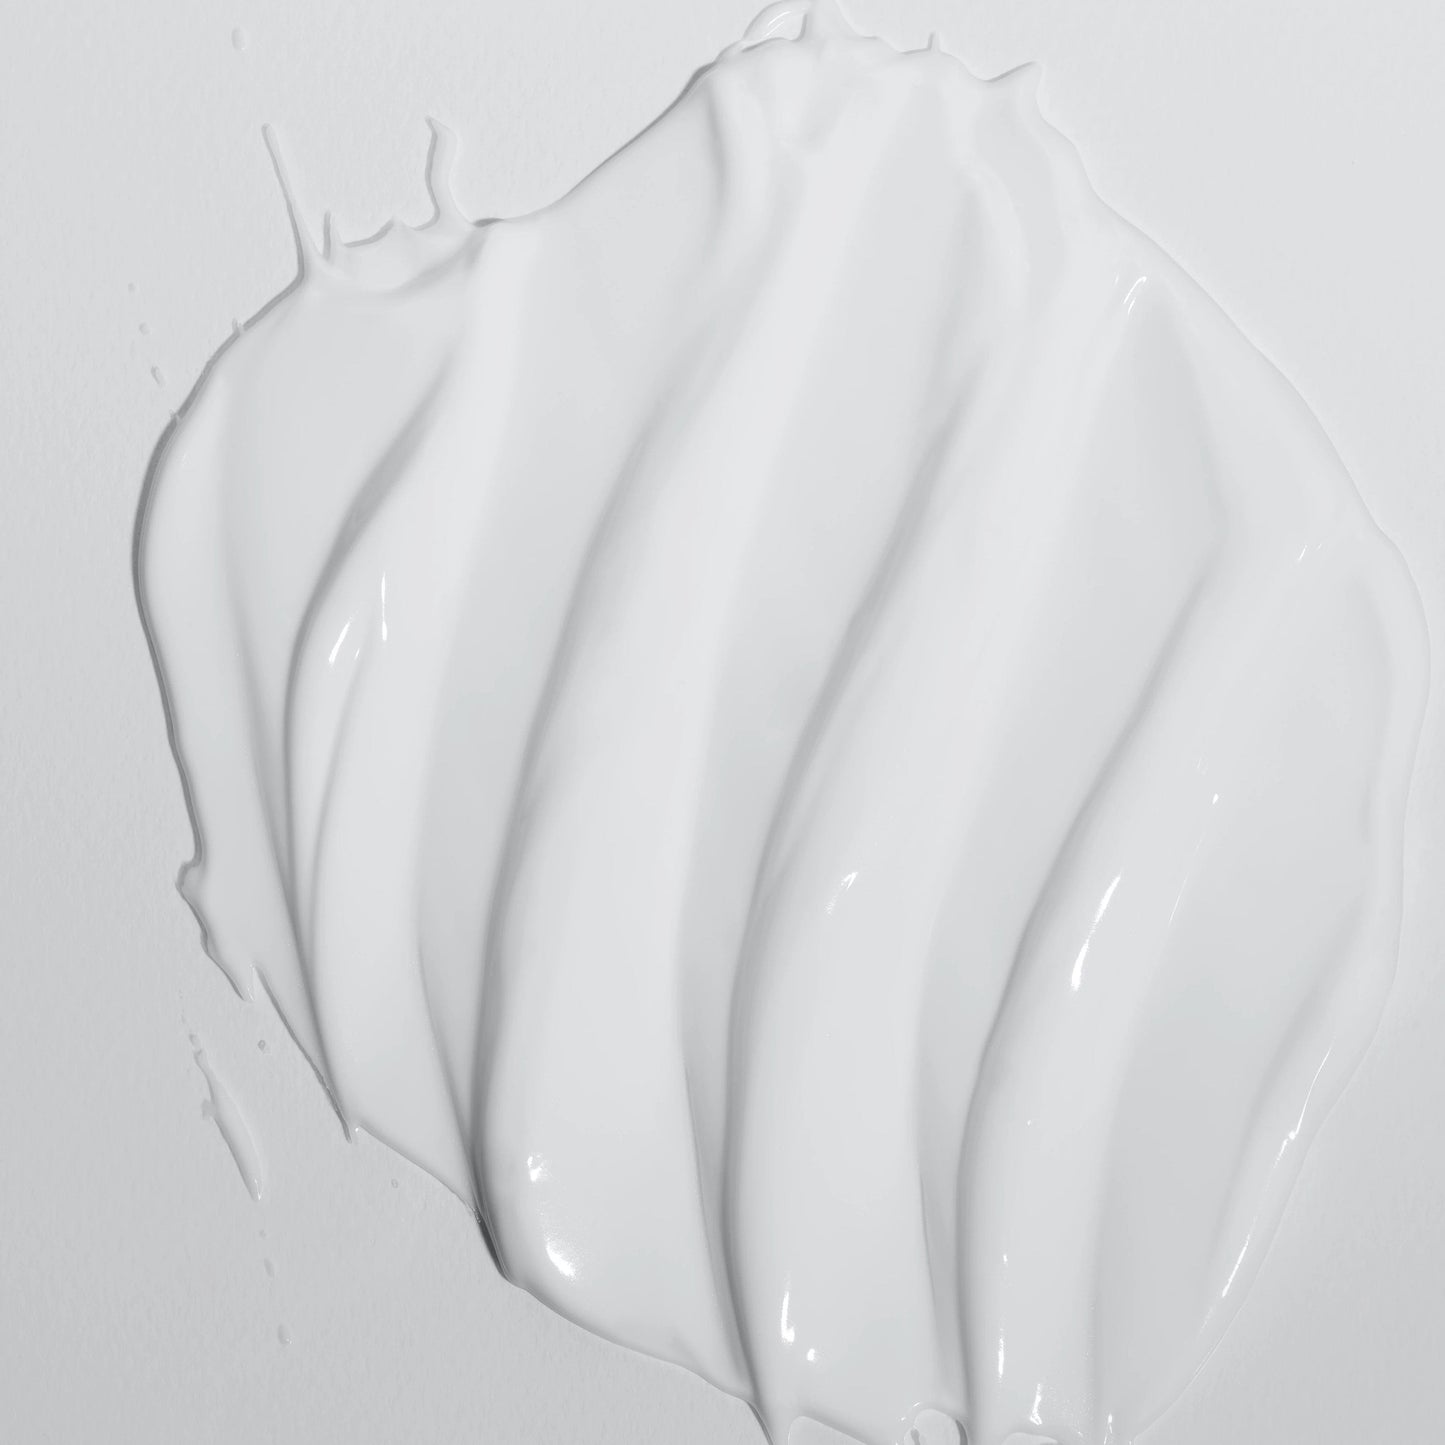 Weiße Creme verschmiert auf einer Oberfläche.